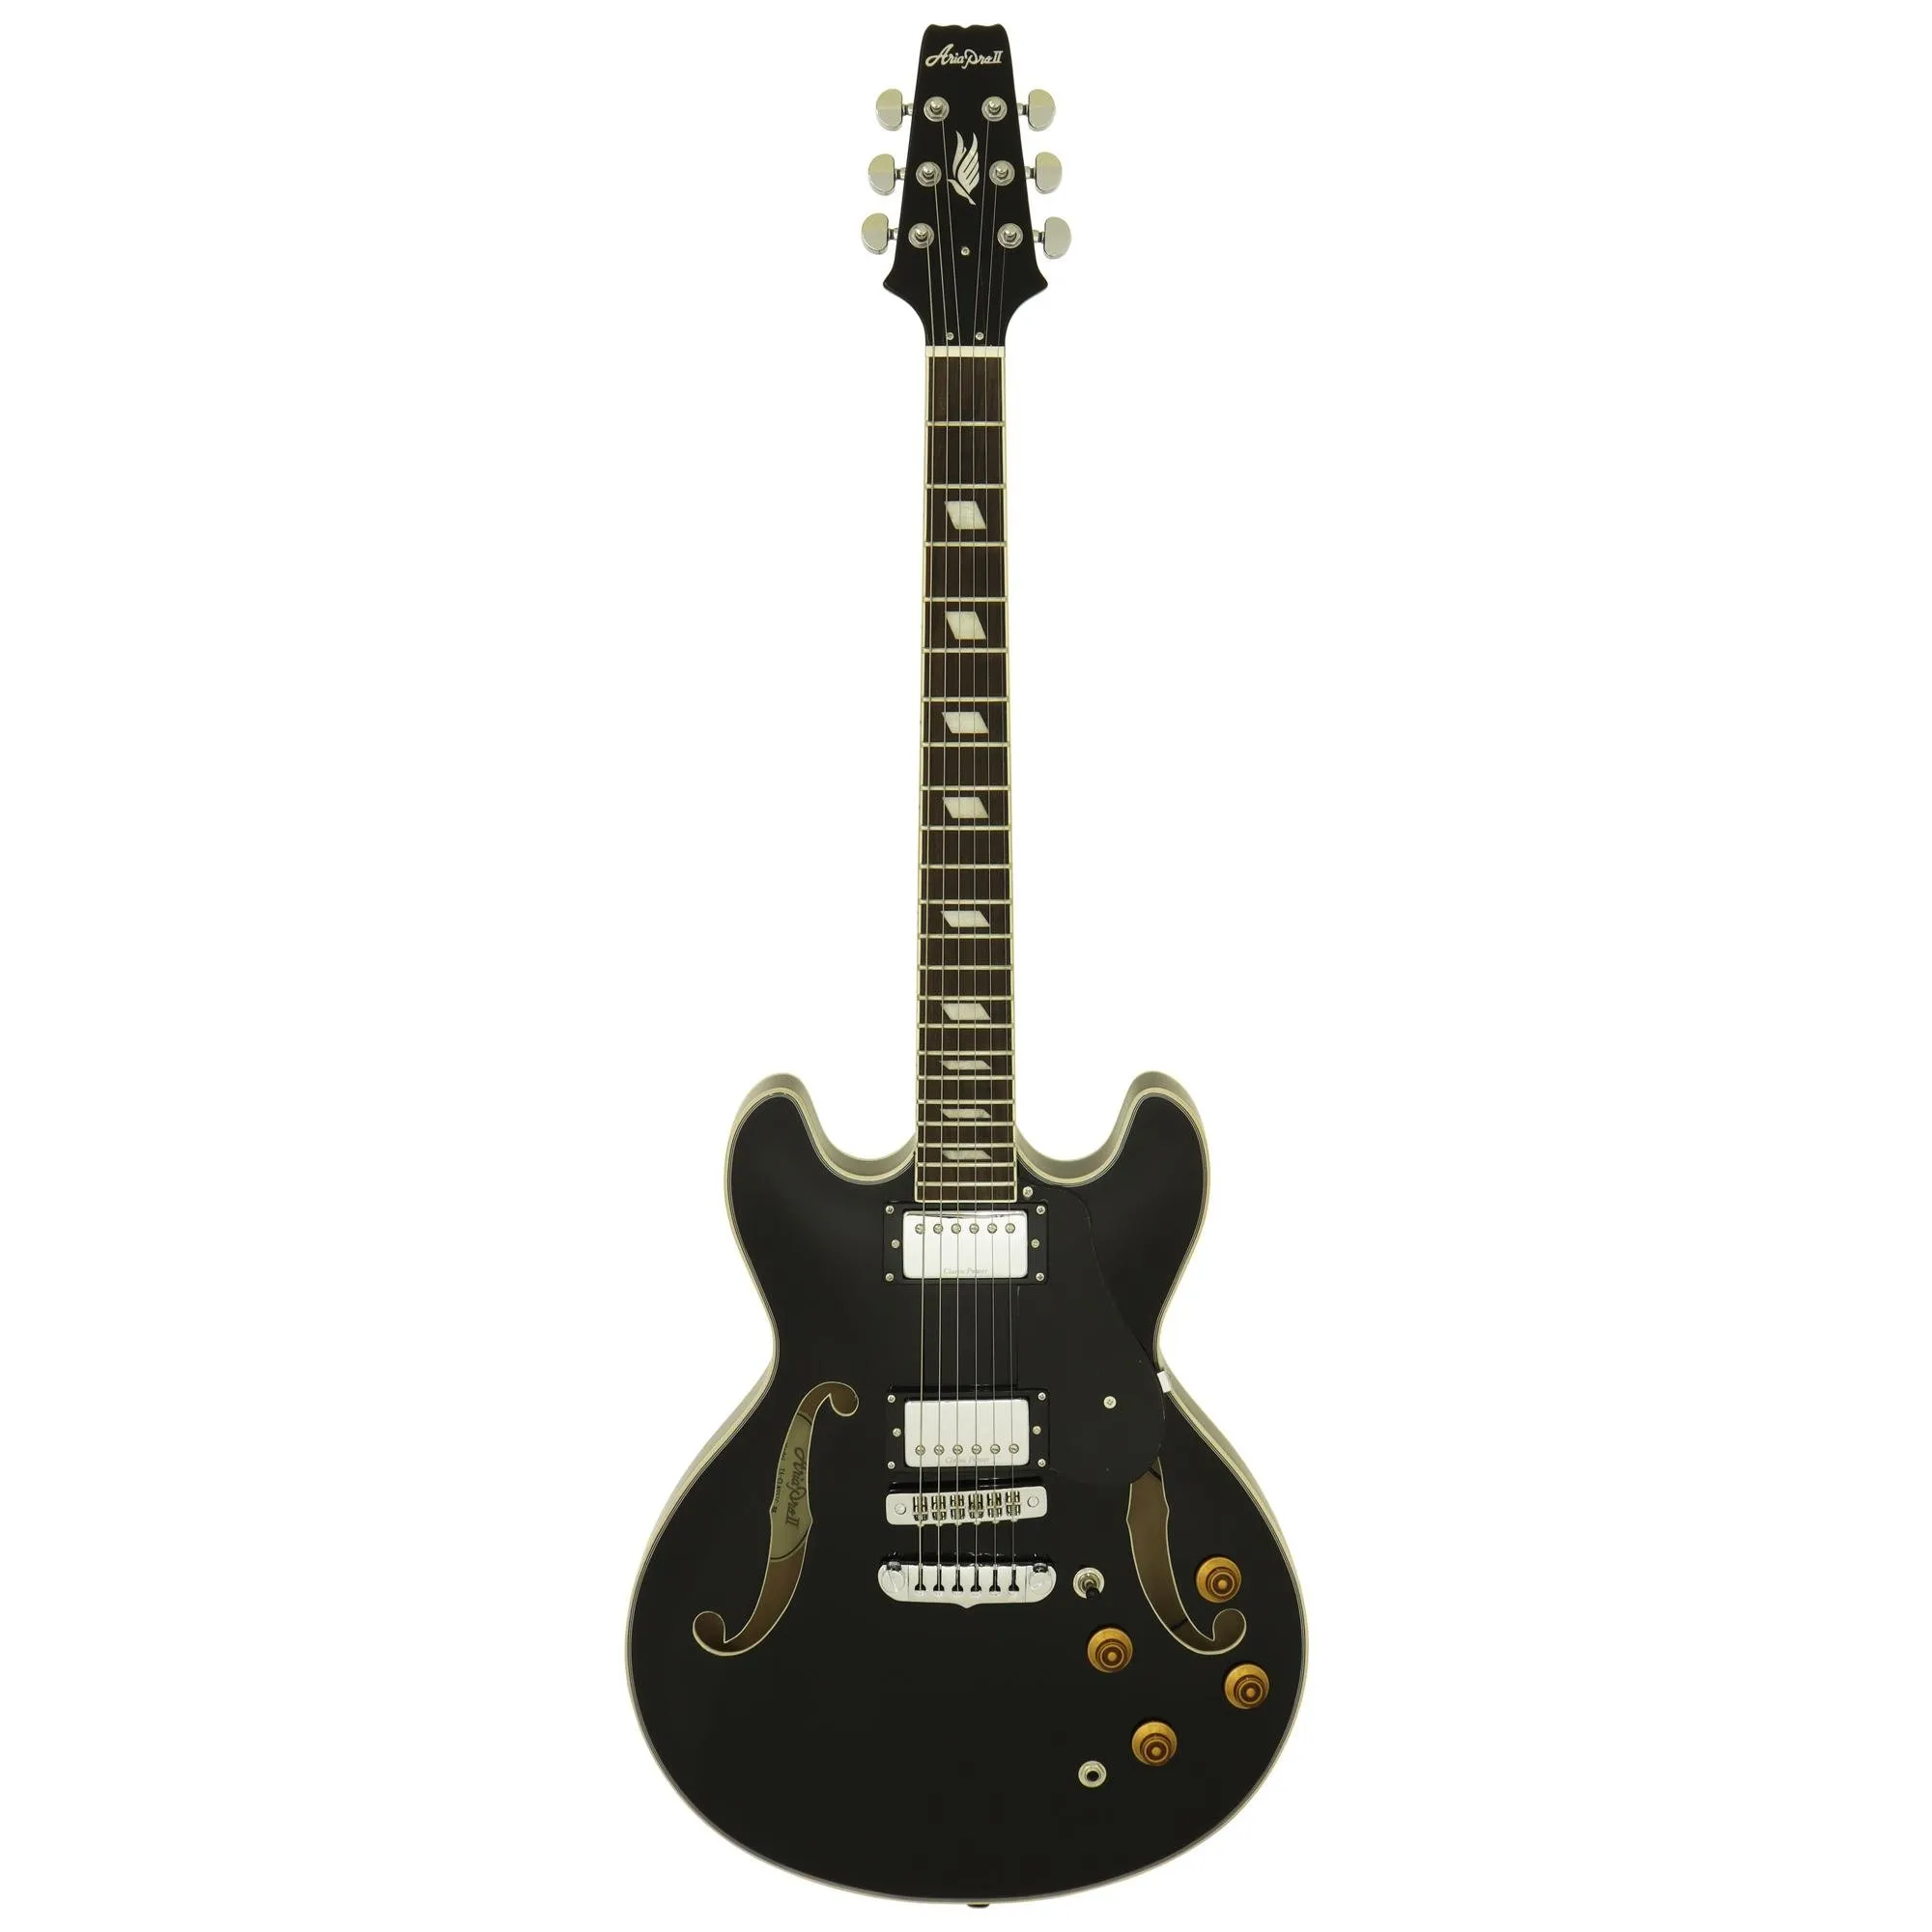 Guitarra Aria Pro II TA-CLASSIC Black por 3.441,00 à vista no boleto/pix ou parcele em até 12x sem juros. Compre na loja Mundomax!